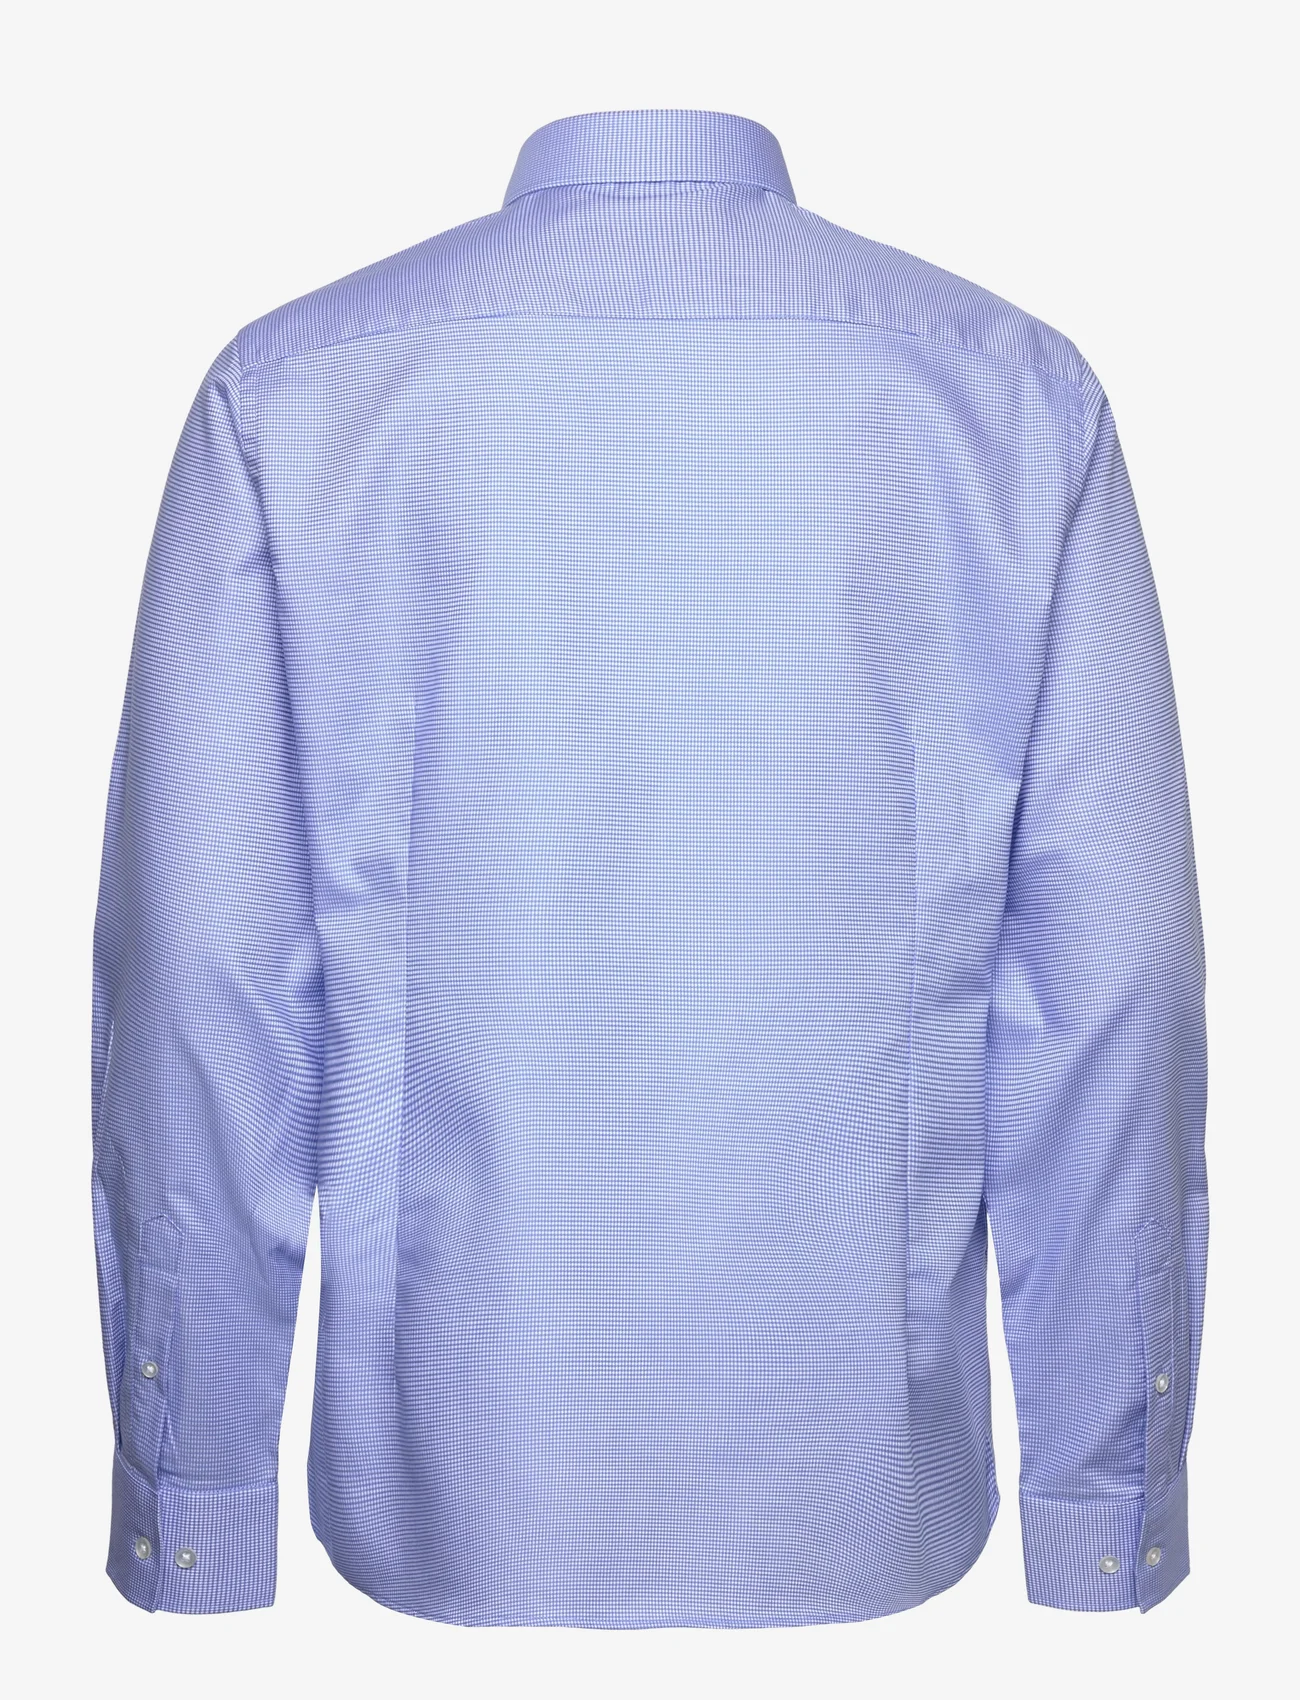 Bruun & Stengade - BS Thorpe Modern Fit Shirt - business shirts - blue - 1